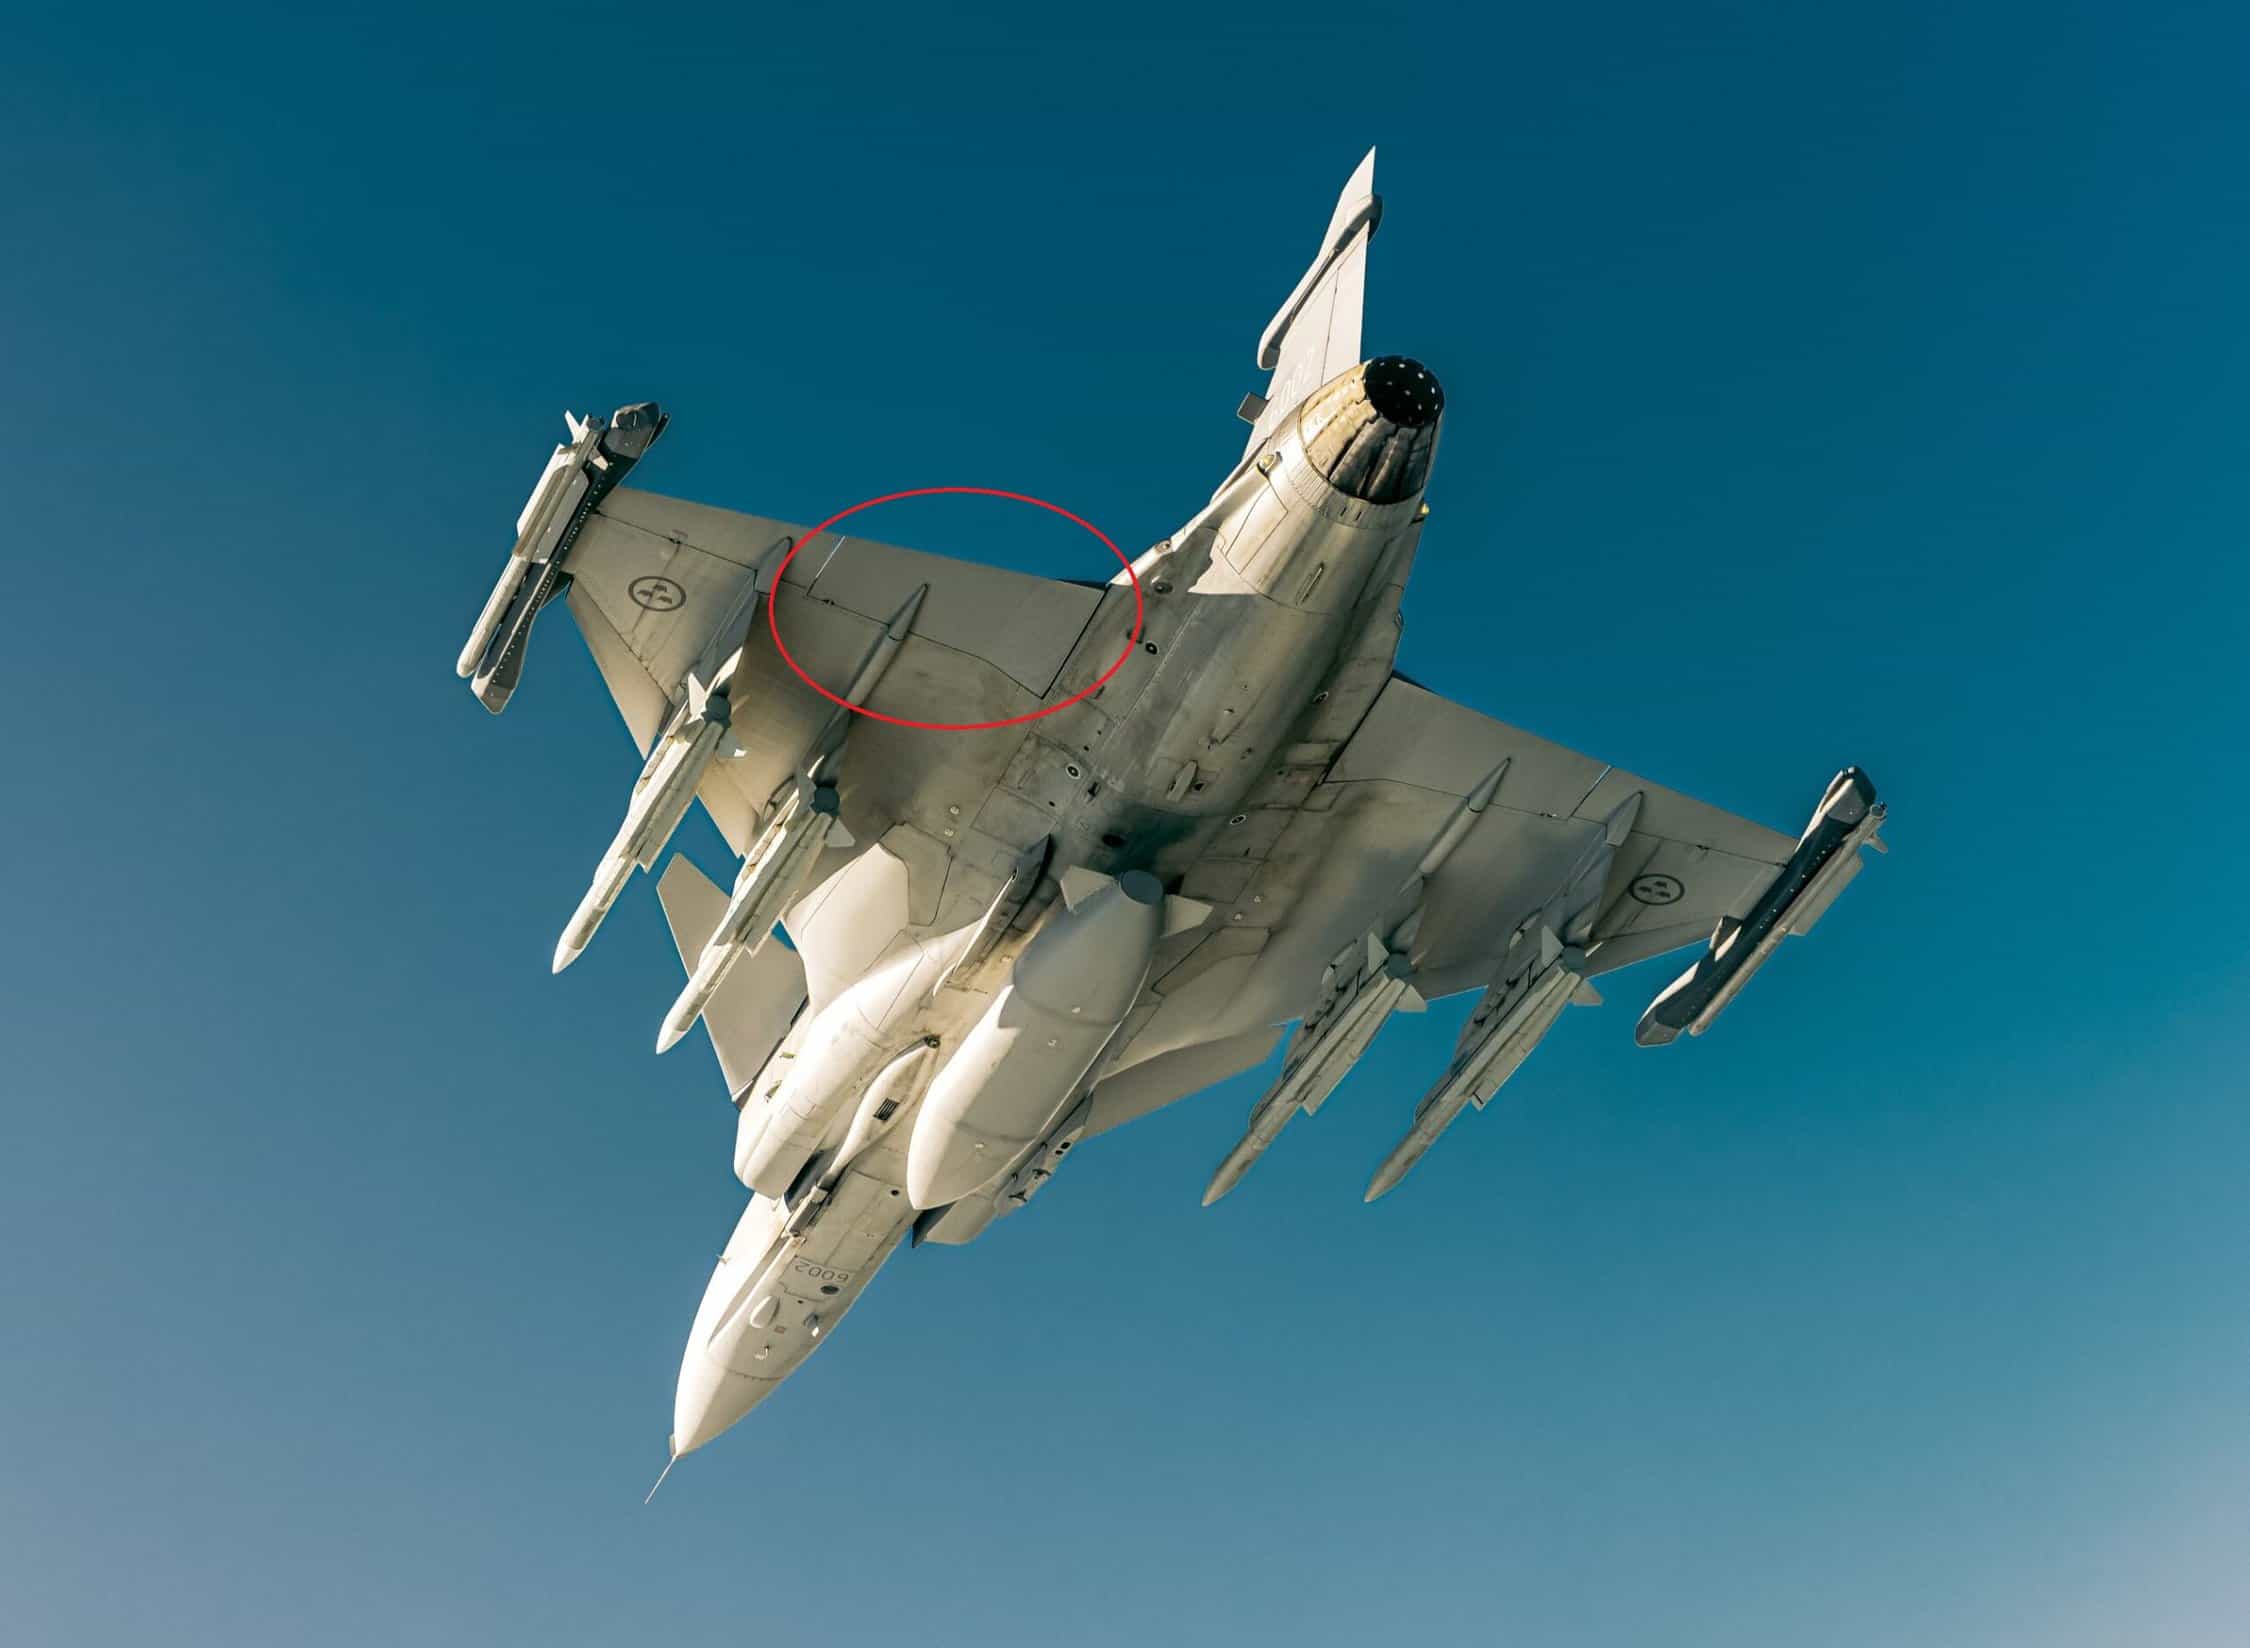 Saab modificou os elevons do Gripen, aumentando sua manobrabilidade em baixas velocidades. Foto: Saab.